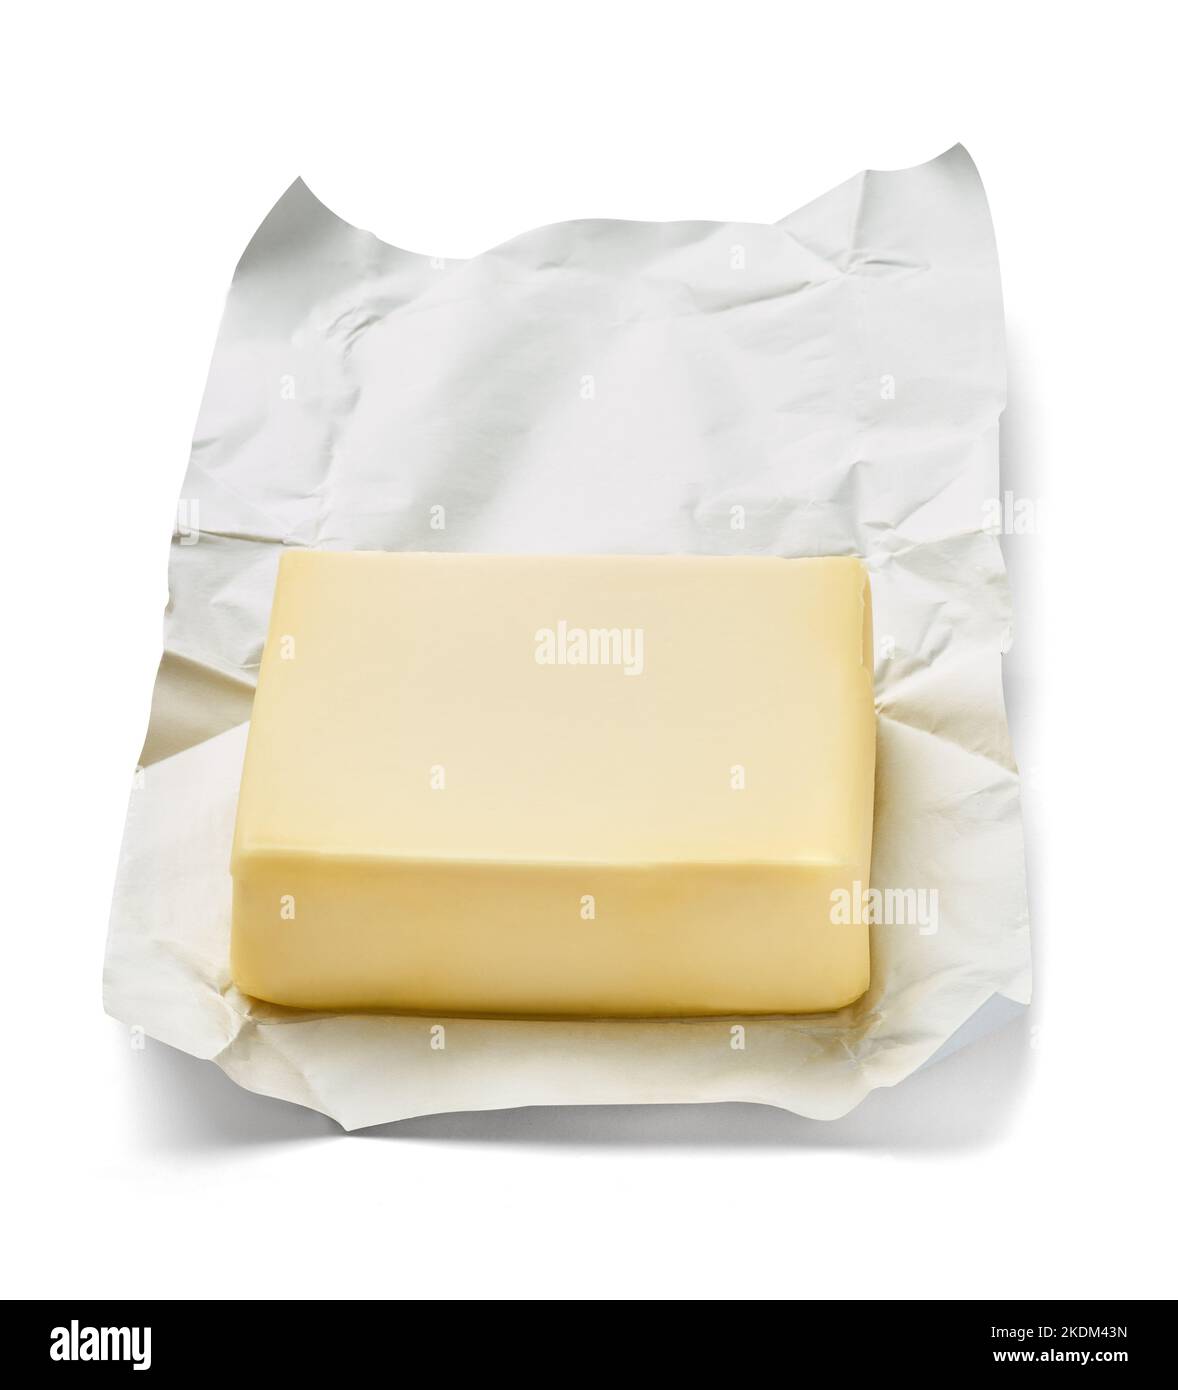 burro ingrediente alimentare latte colazione grasso prodotto margarina blocco giallo latte fresco colesterolo cottura Foto Stock